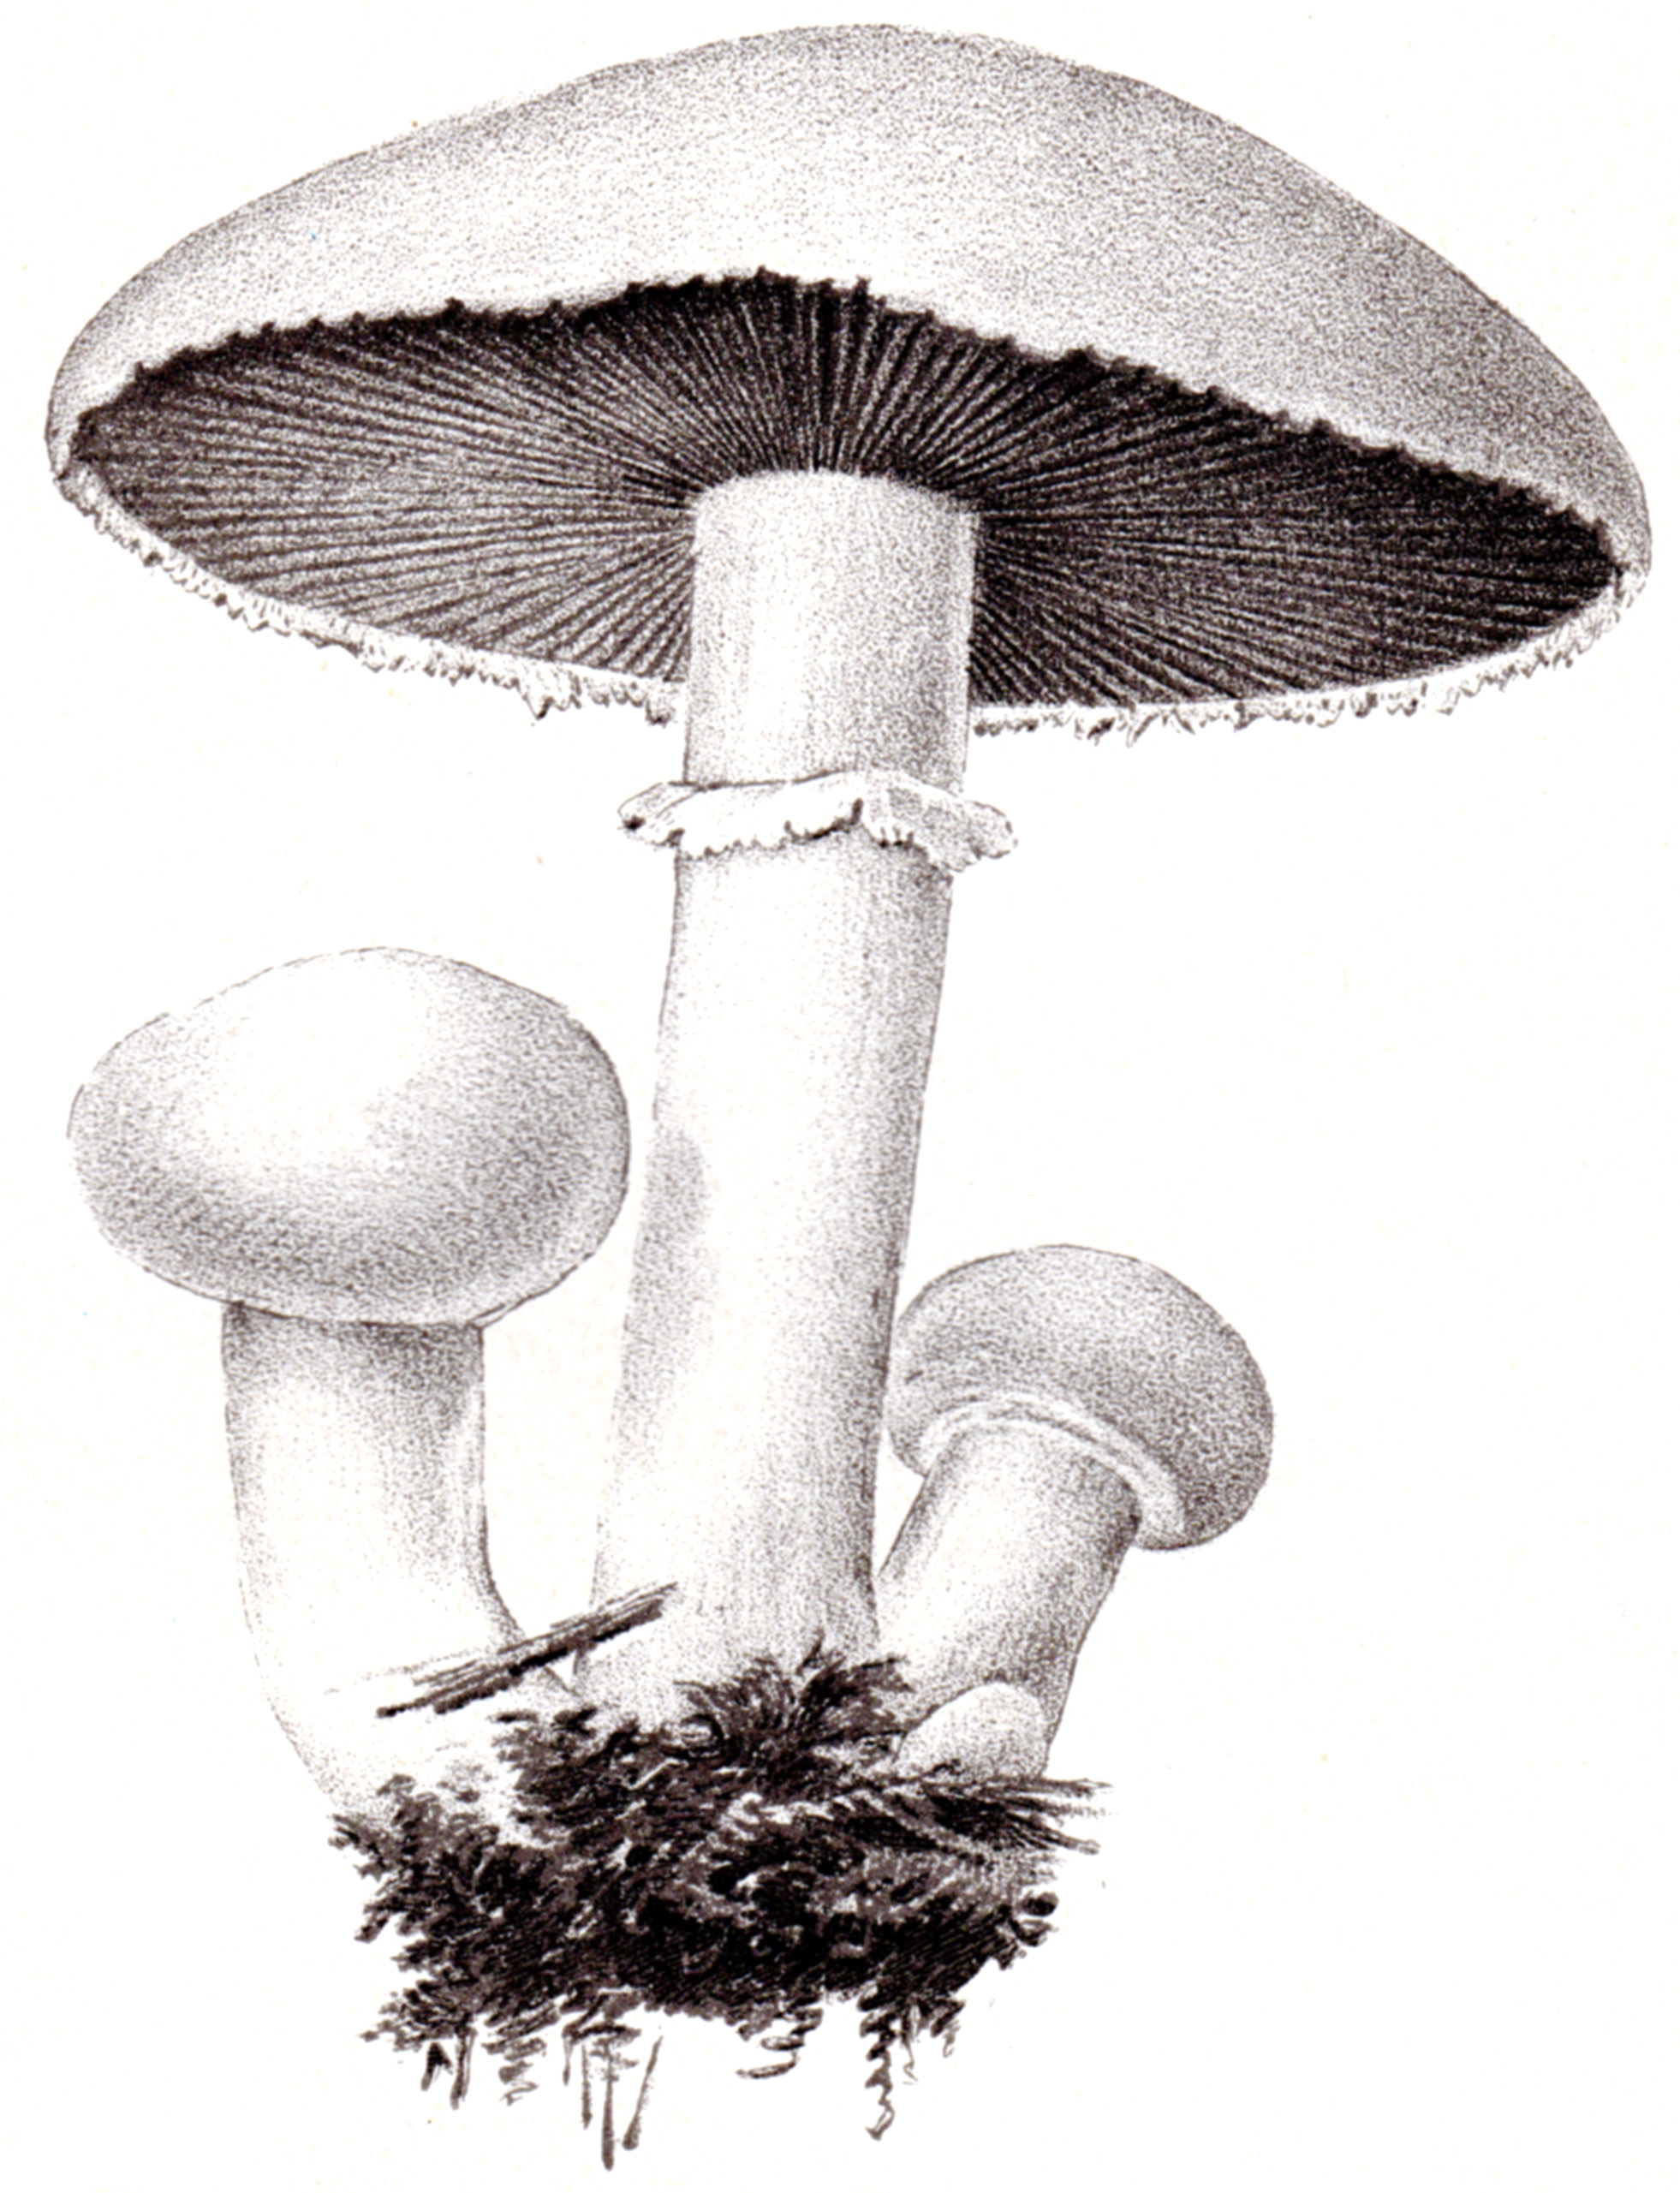 U.S. Dept. of Agriculture – Mushrooms 1897